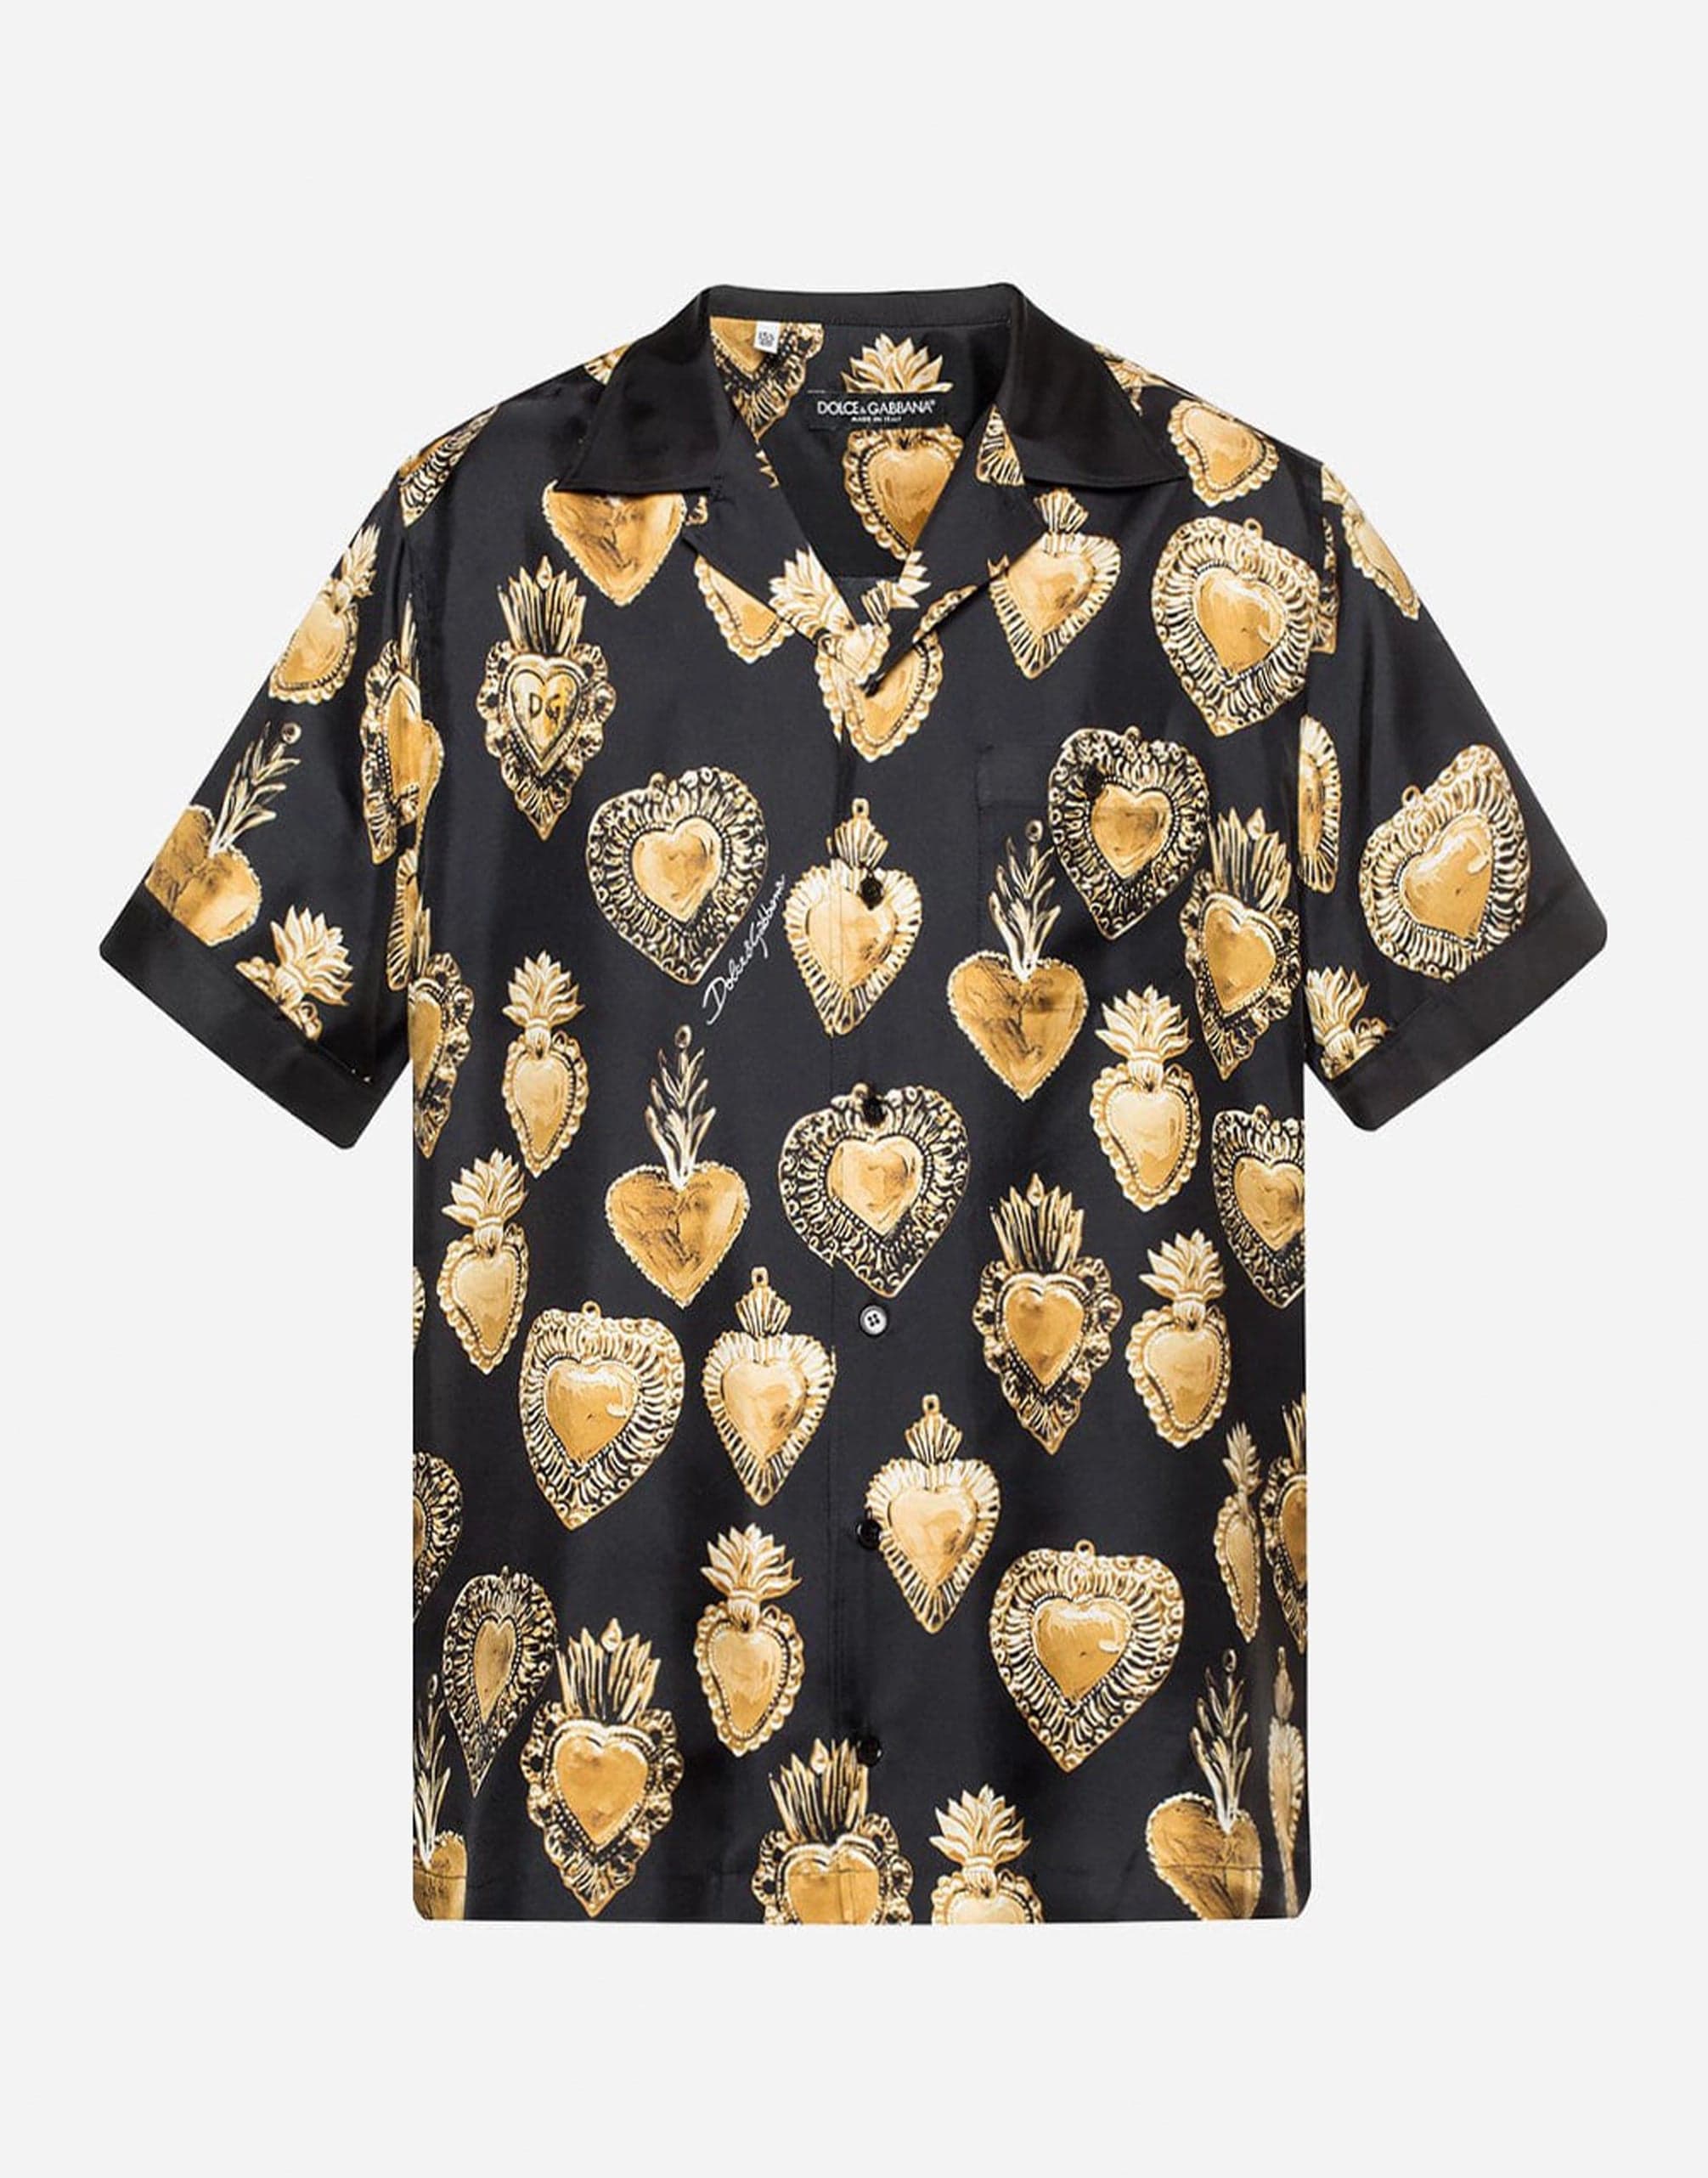 Dolce & Gabbana Sacred Heart Print Shirt